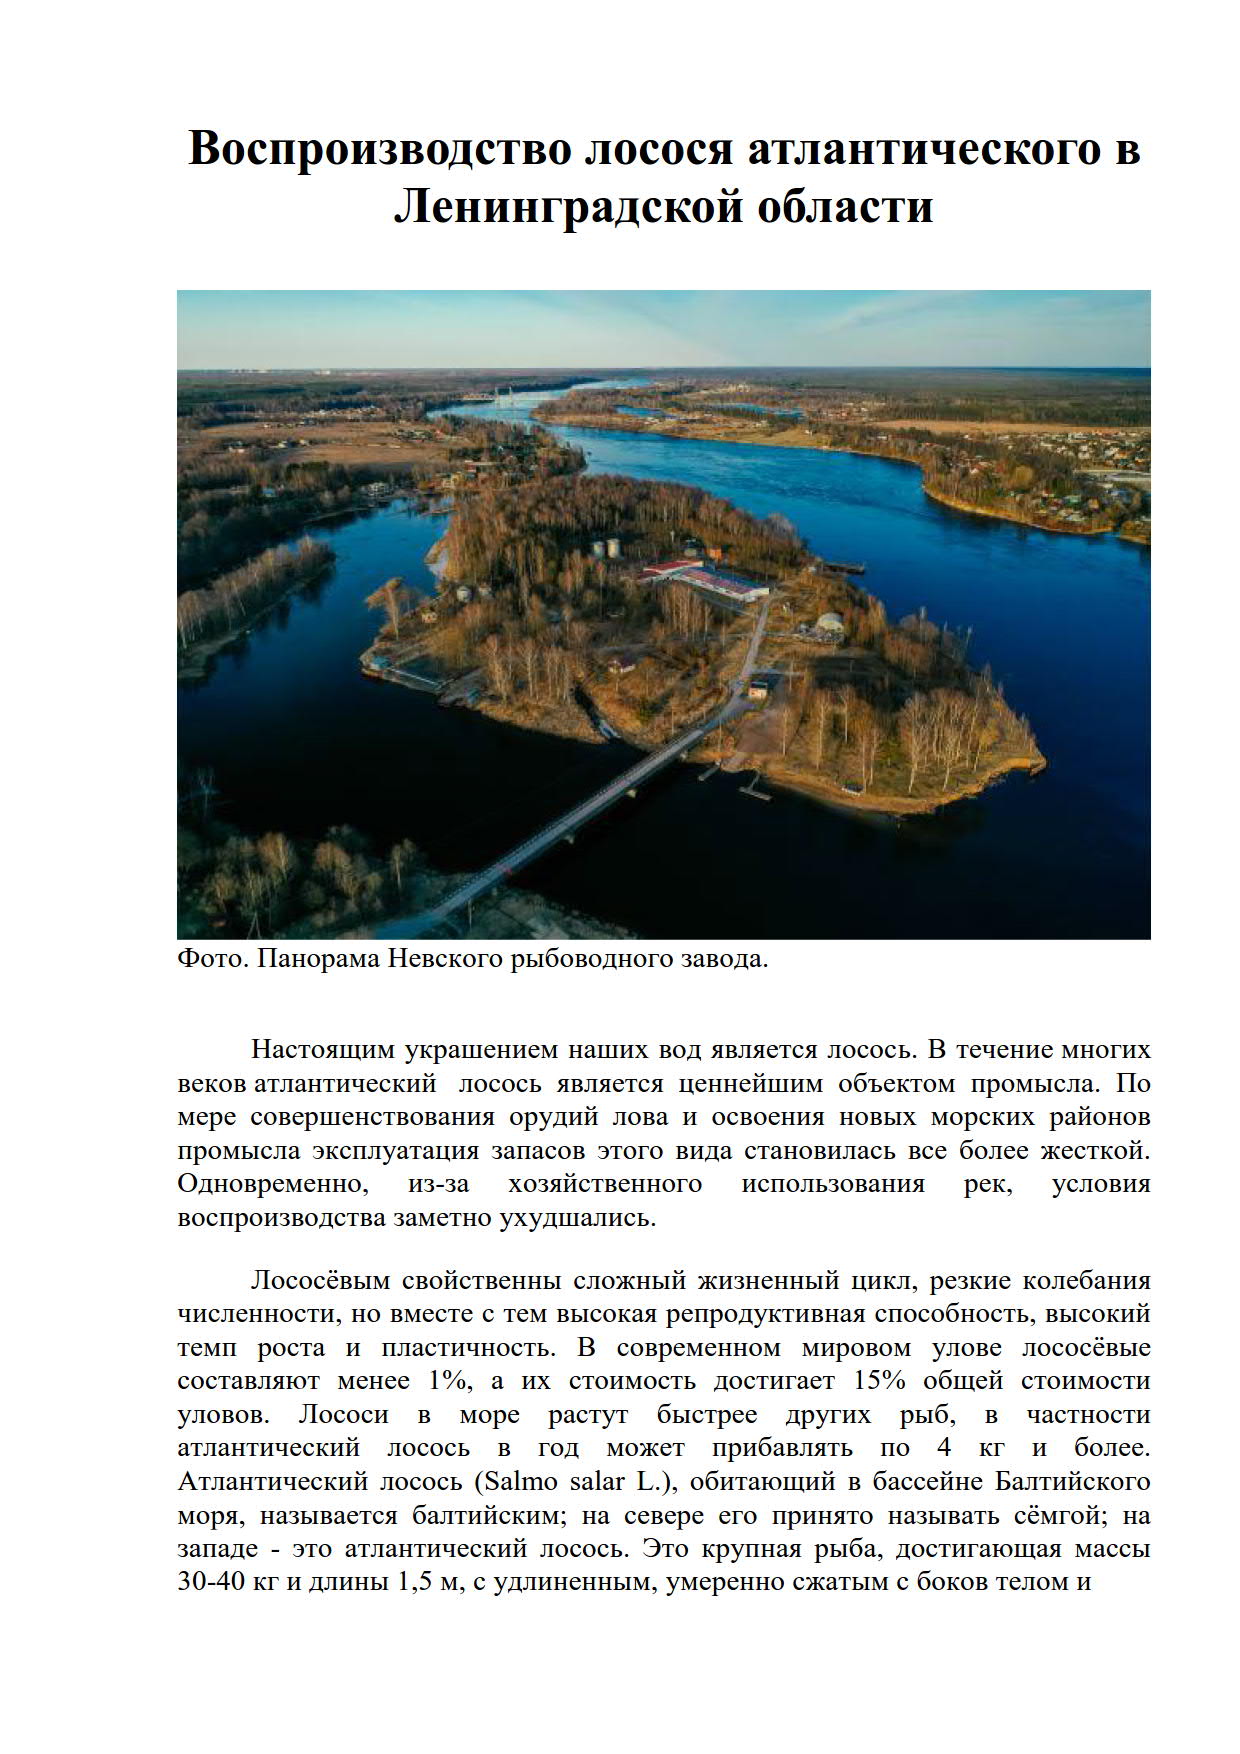 Воспроизводство лосося атлантического в Ленинградской области_1